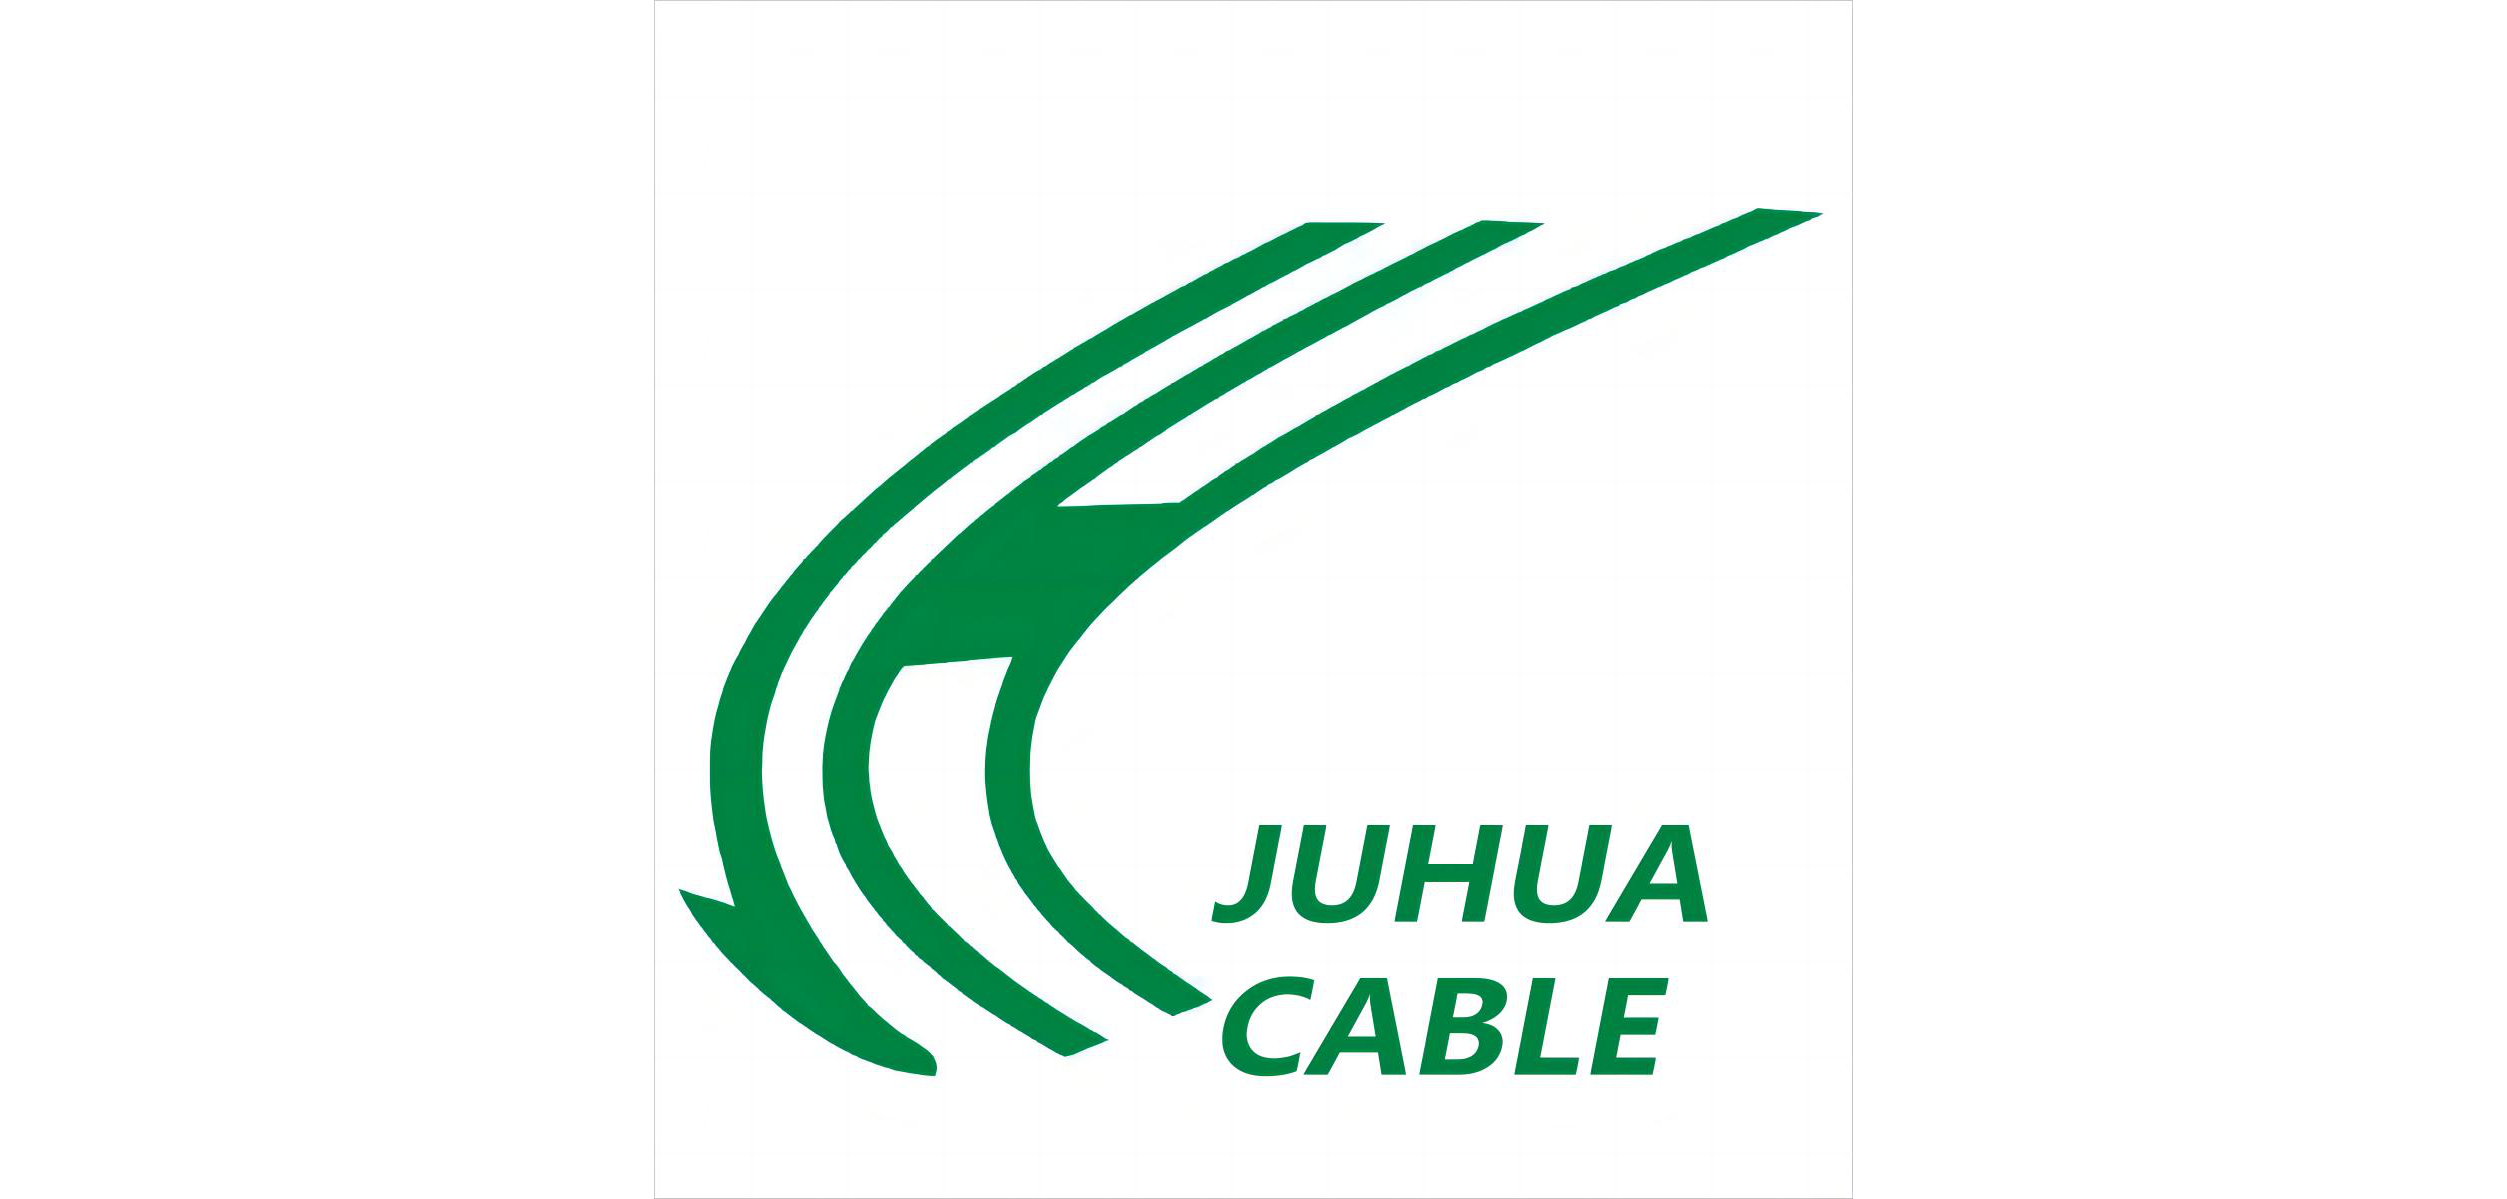 JUHUA CABLE